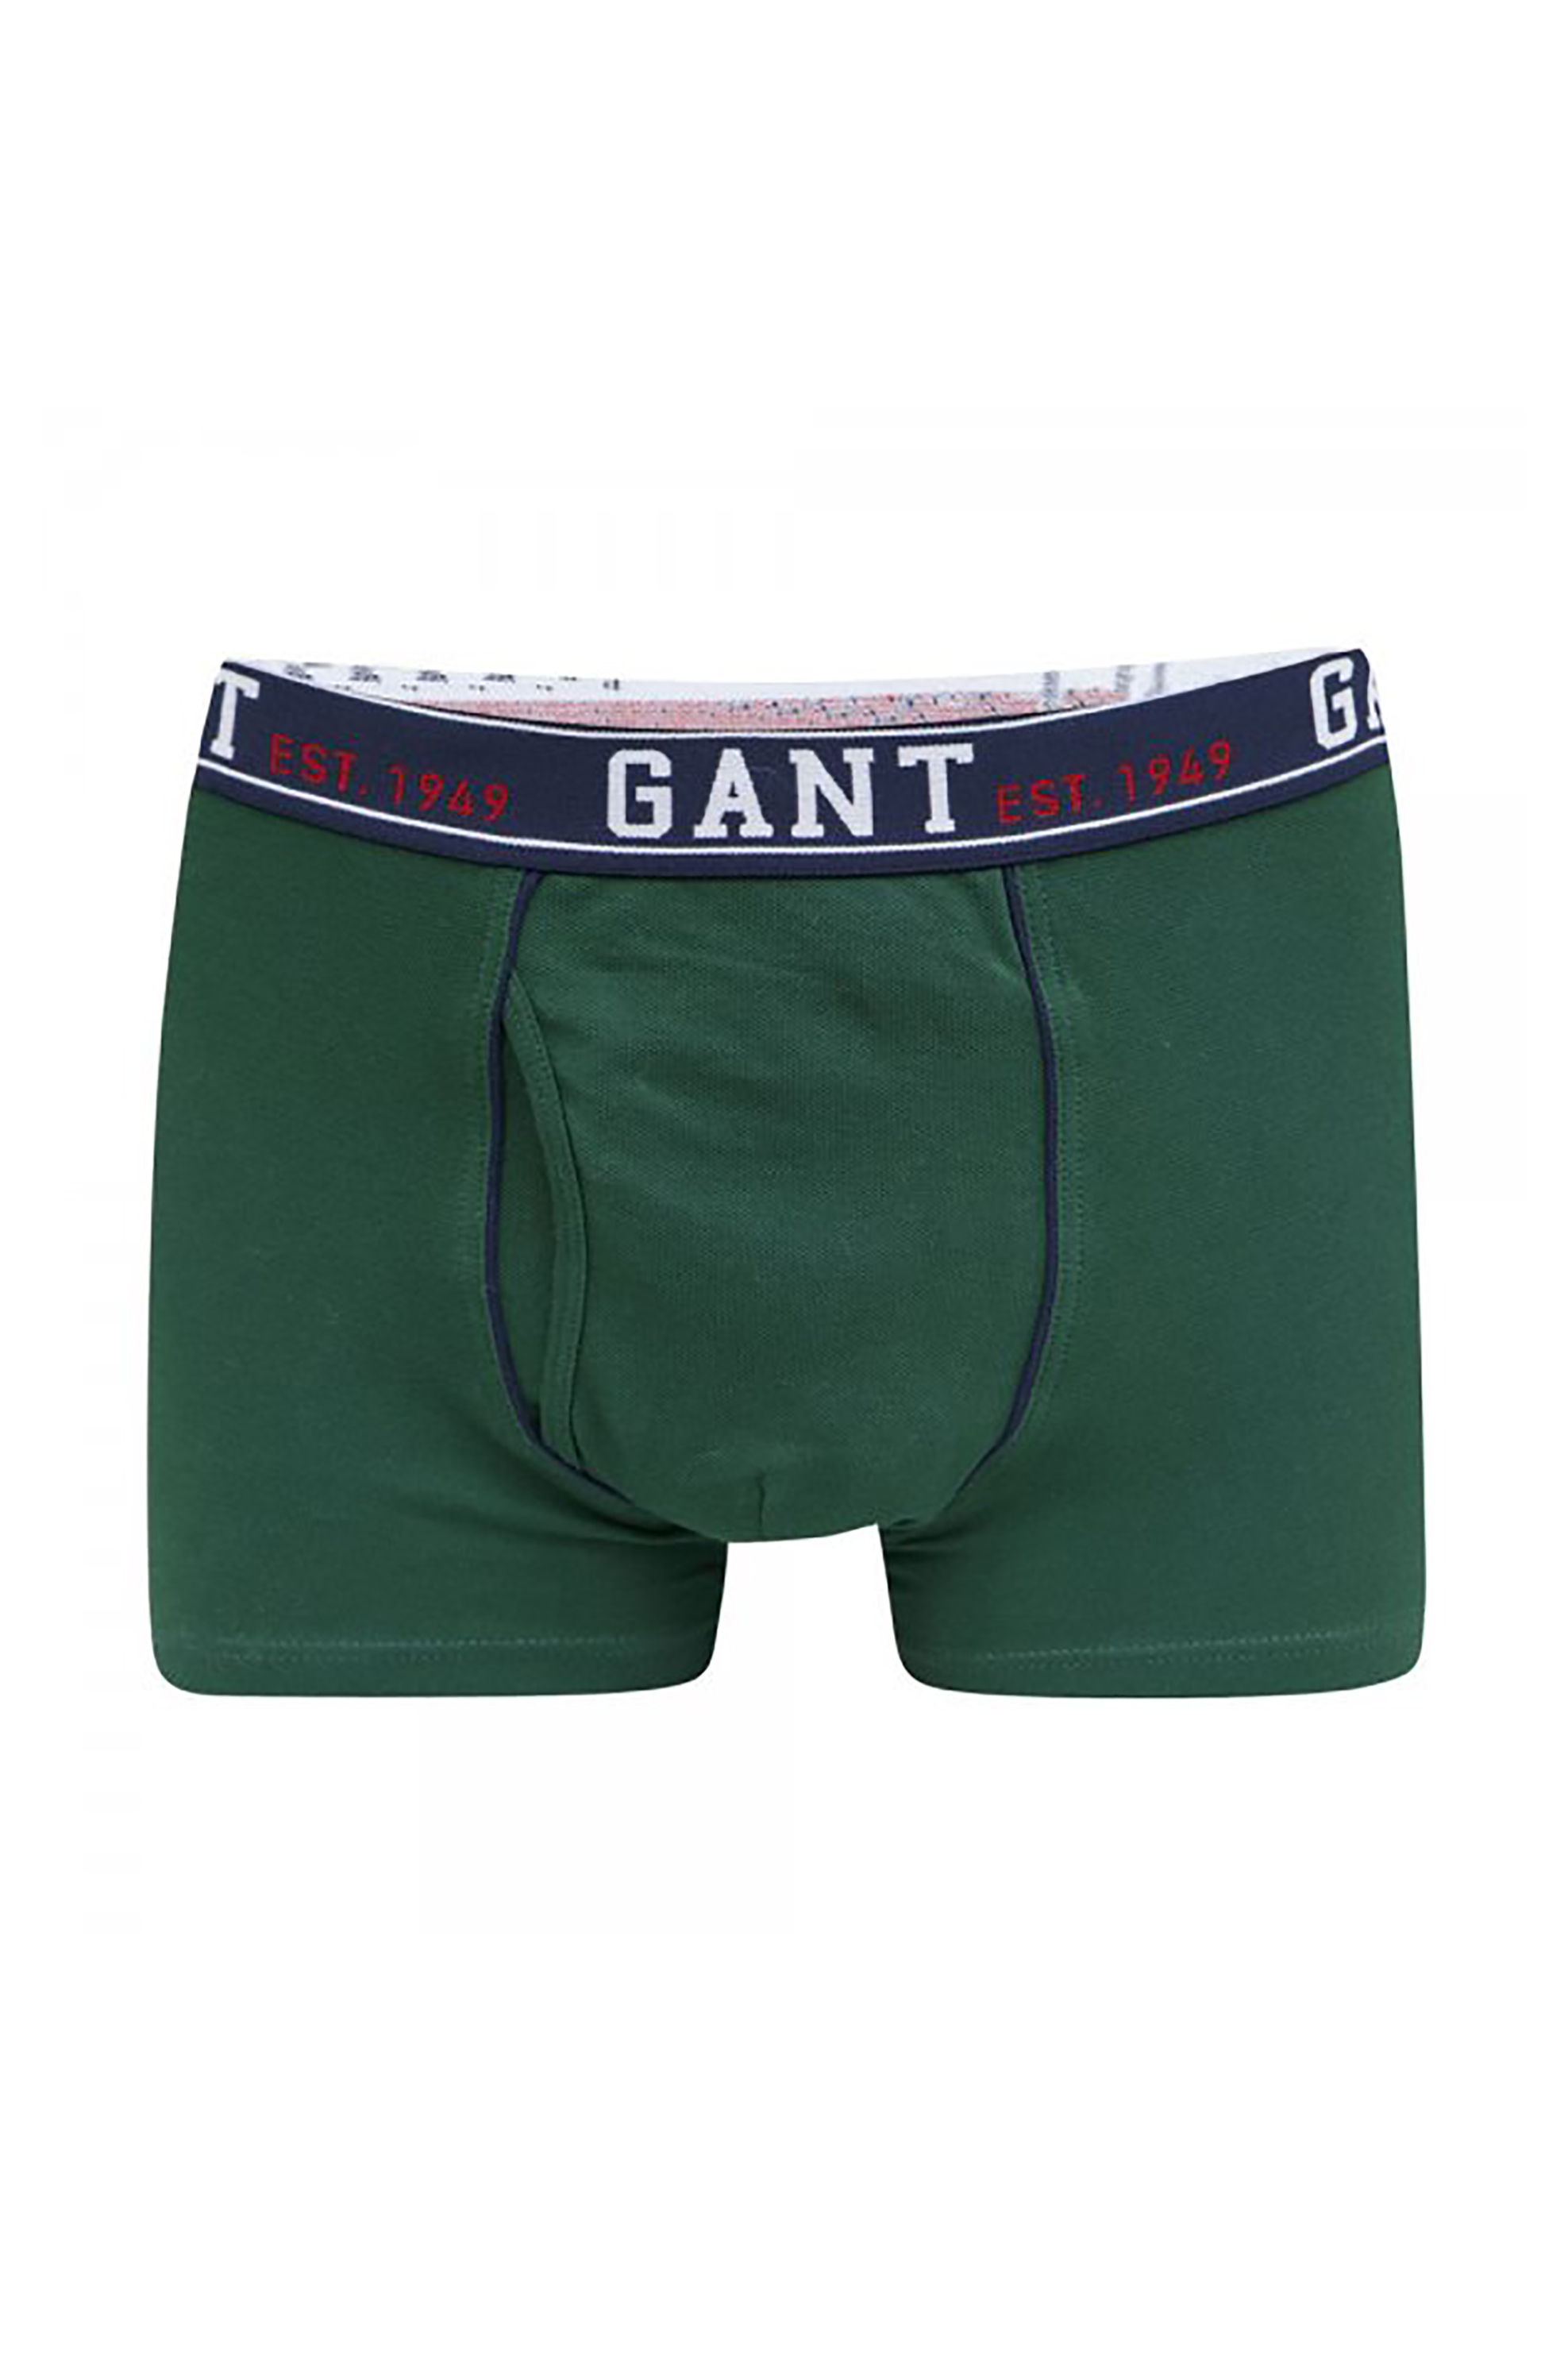 Άνδρας > ΡΟΥΧΑ > Εσώρουχα > Boxer Shorts Gant ανδρικό μποξεράκι - 1333 Πράσινο